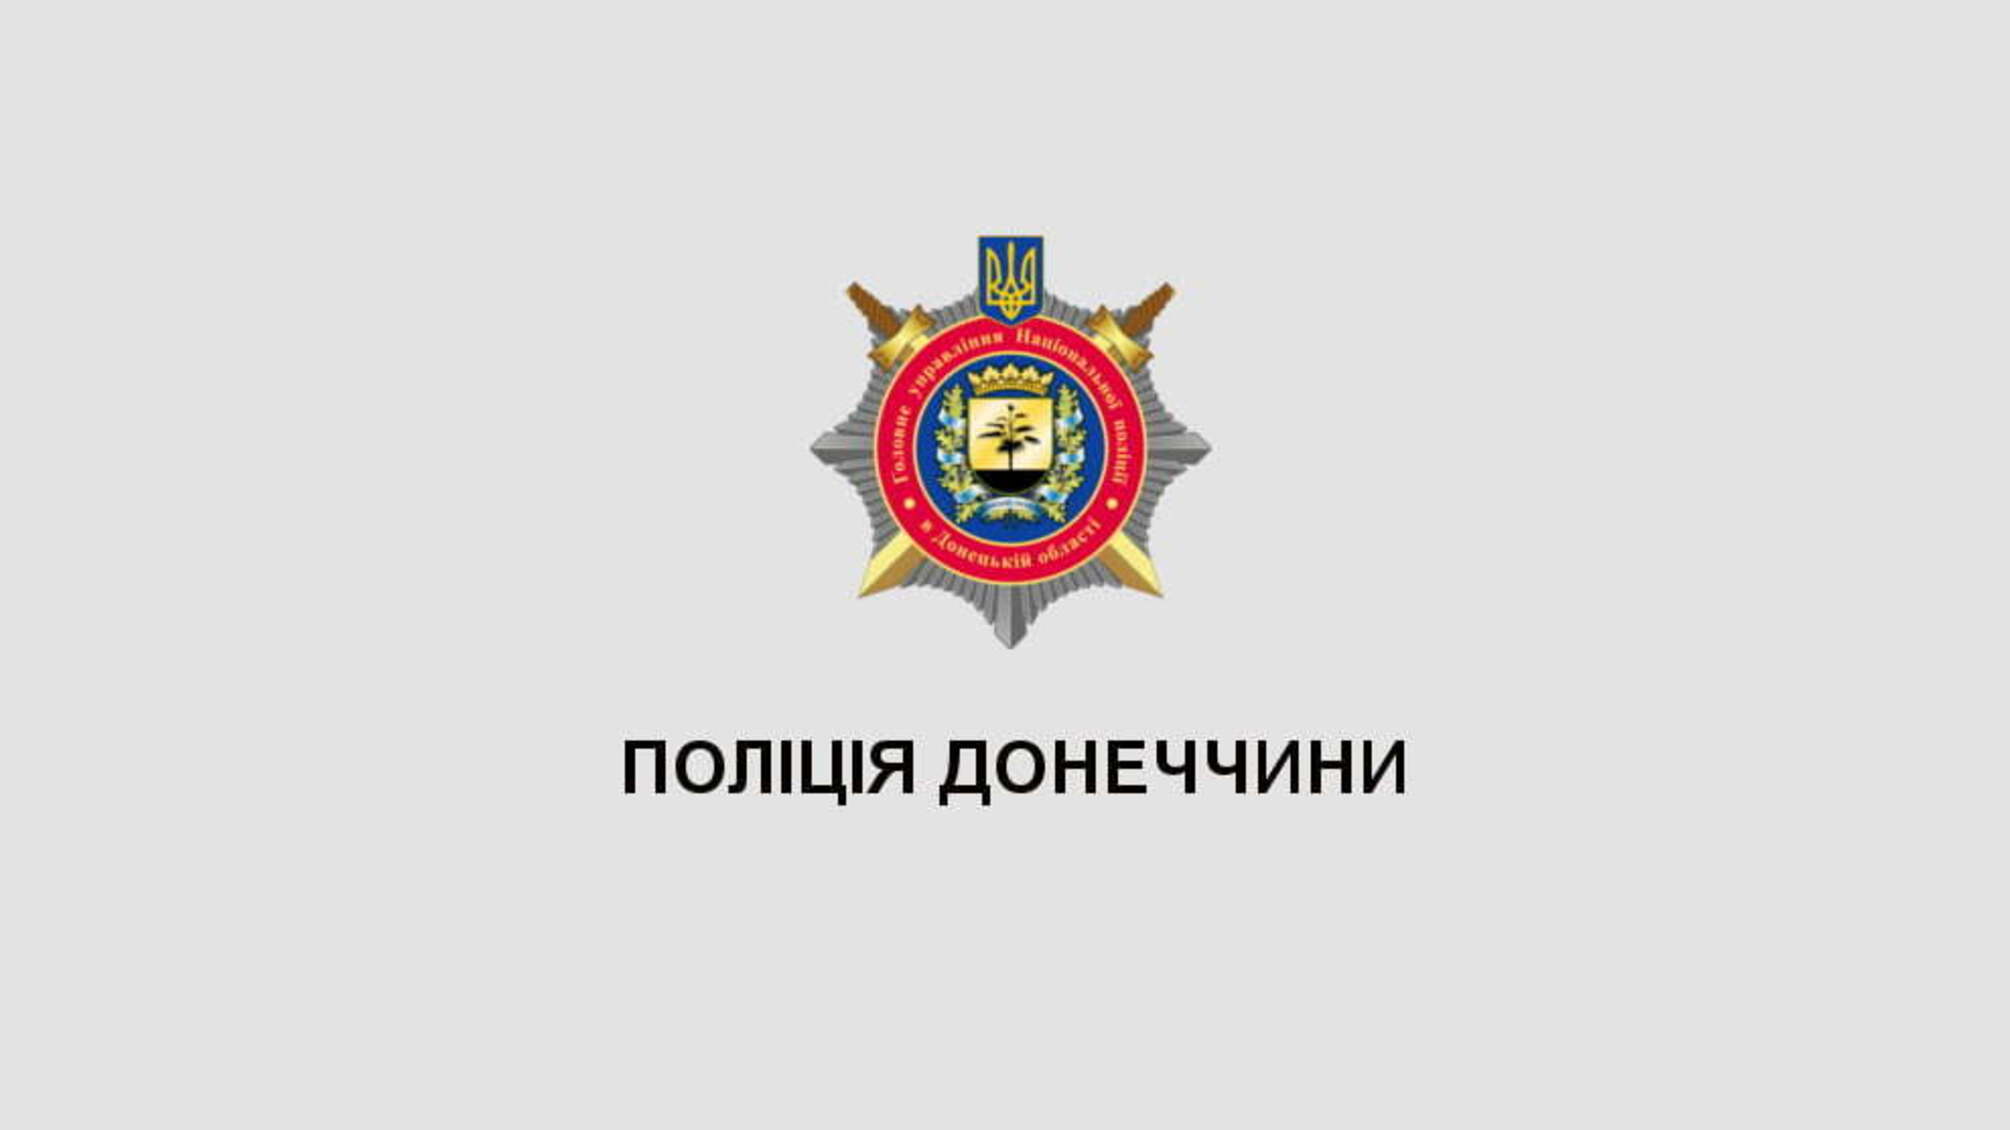 Станом на 20:30 поліцейські Донеччини відкрили 20 кримінальних проваджень щодо порушень виборчого законодавства